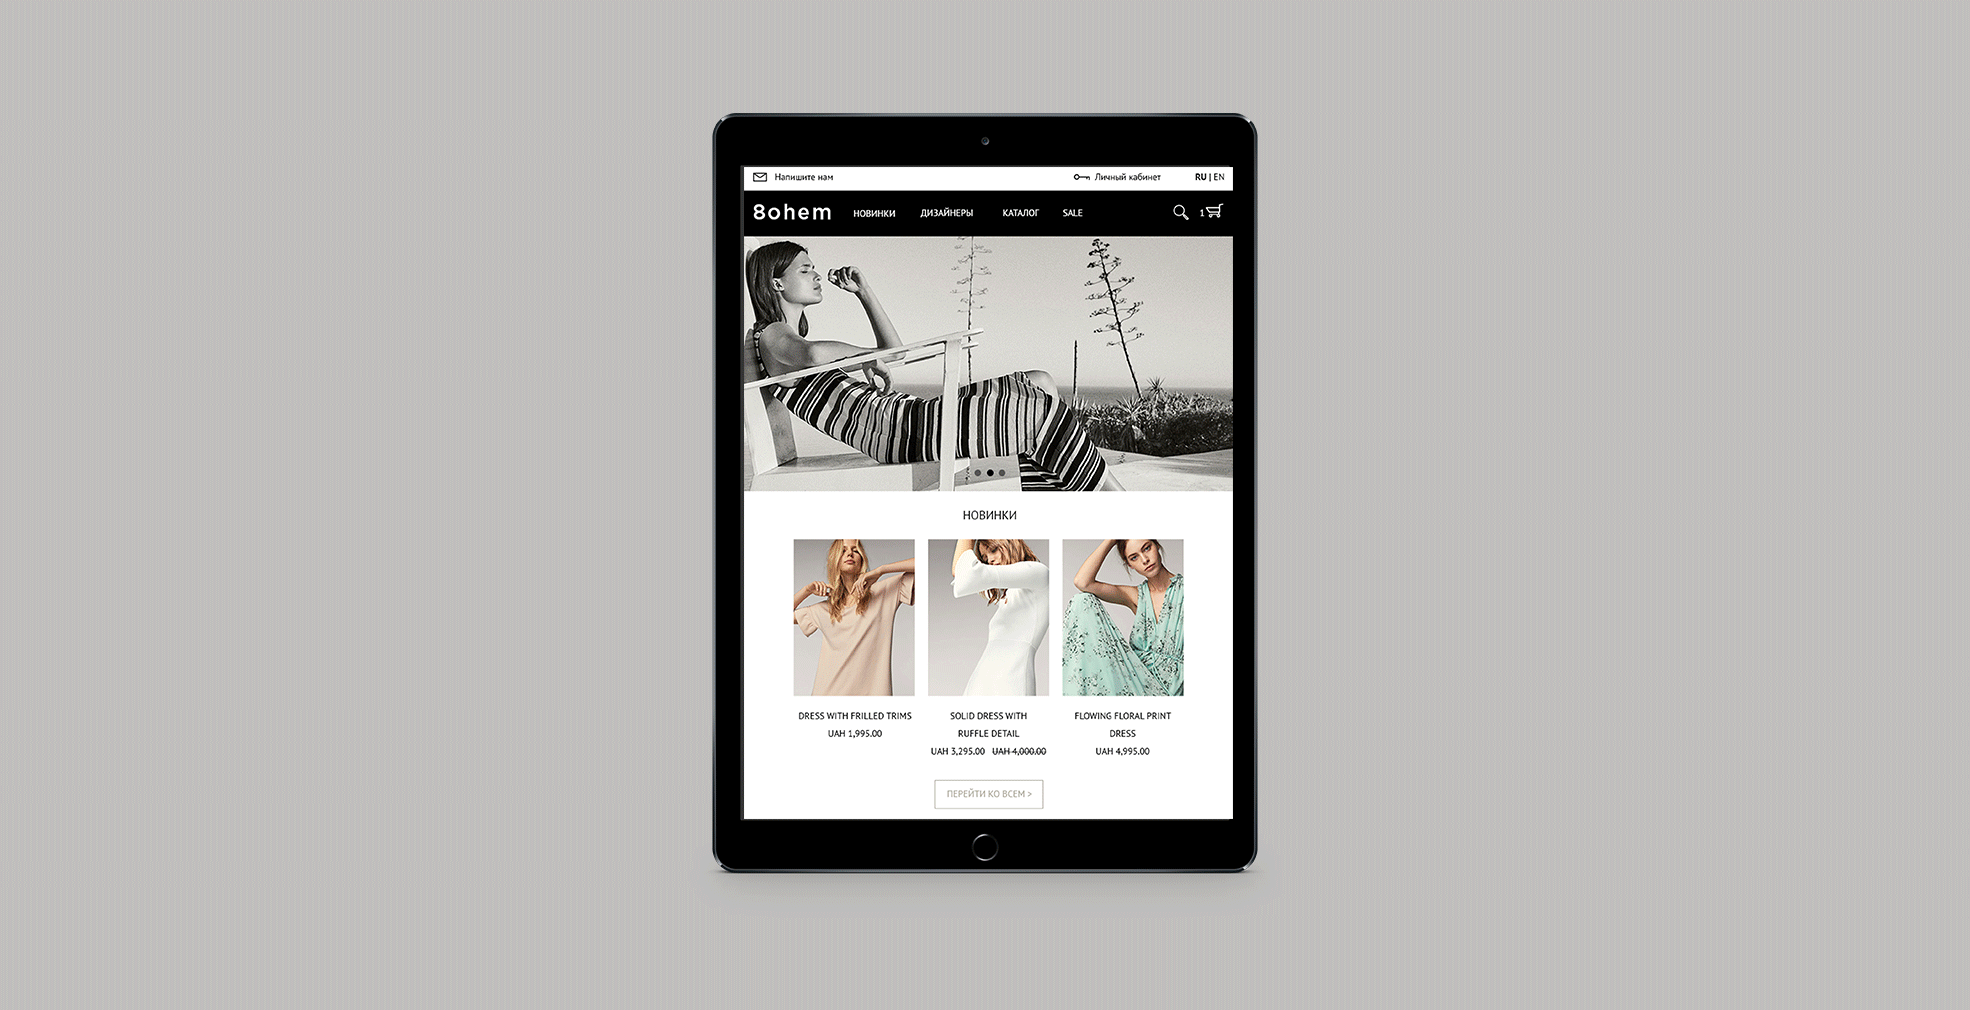 Создание сайта для интернет-магазина одежды 8ohem